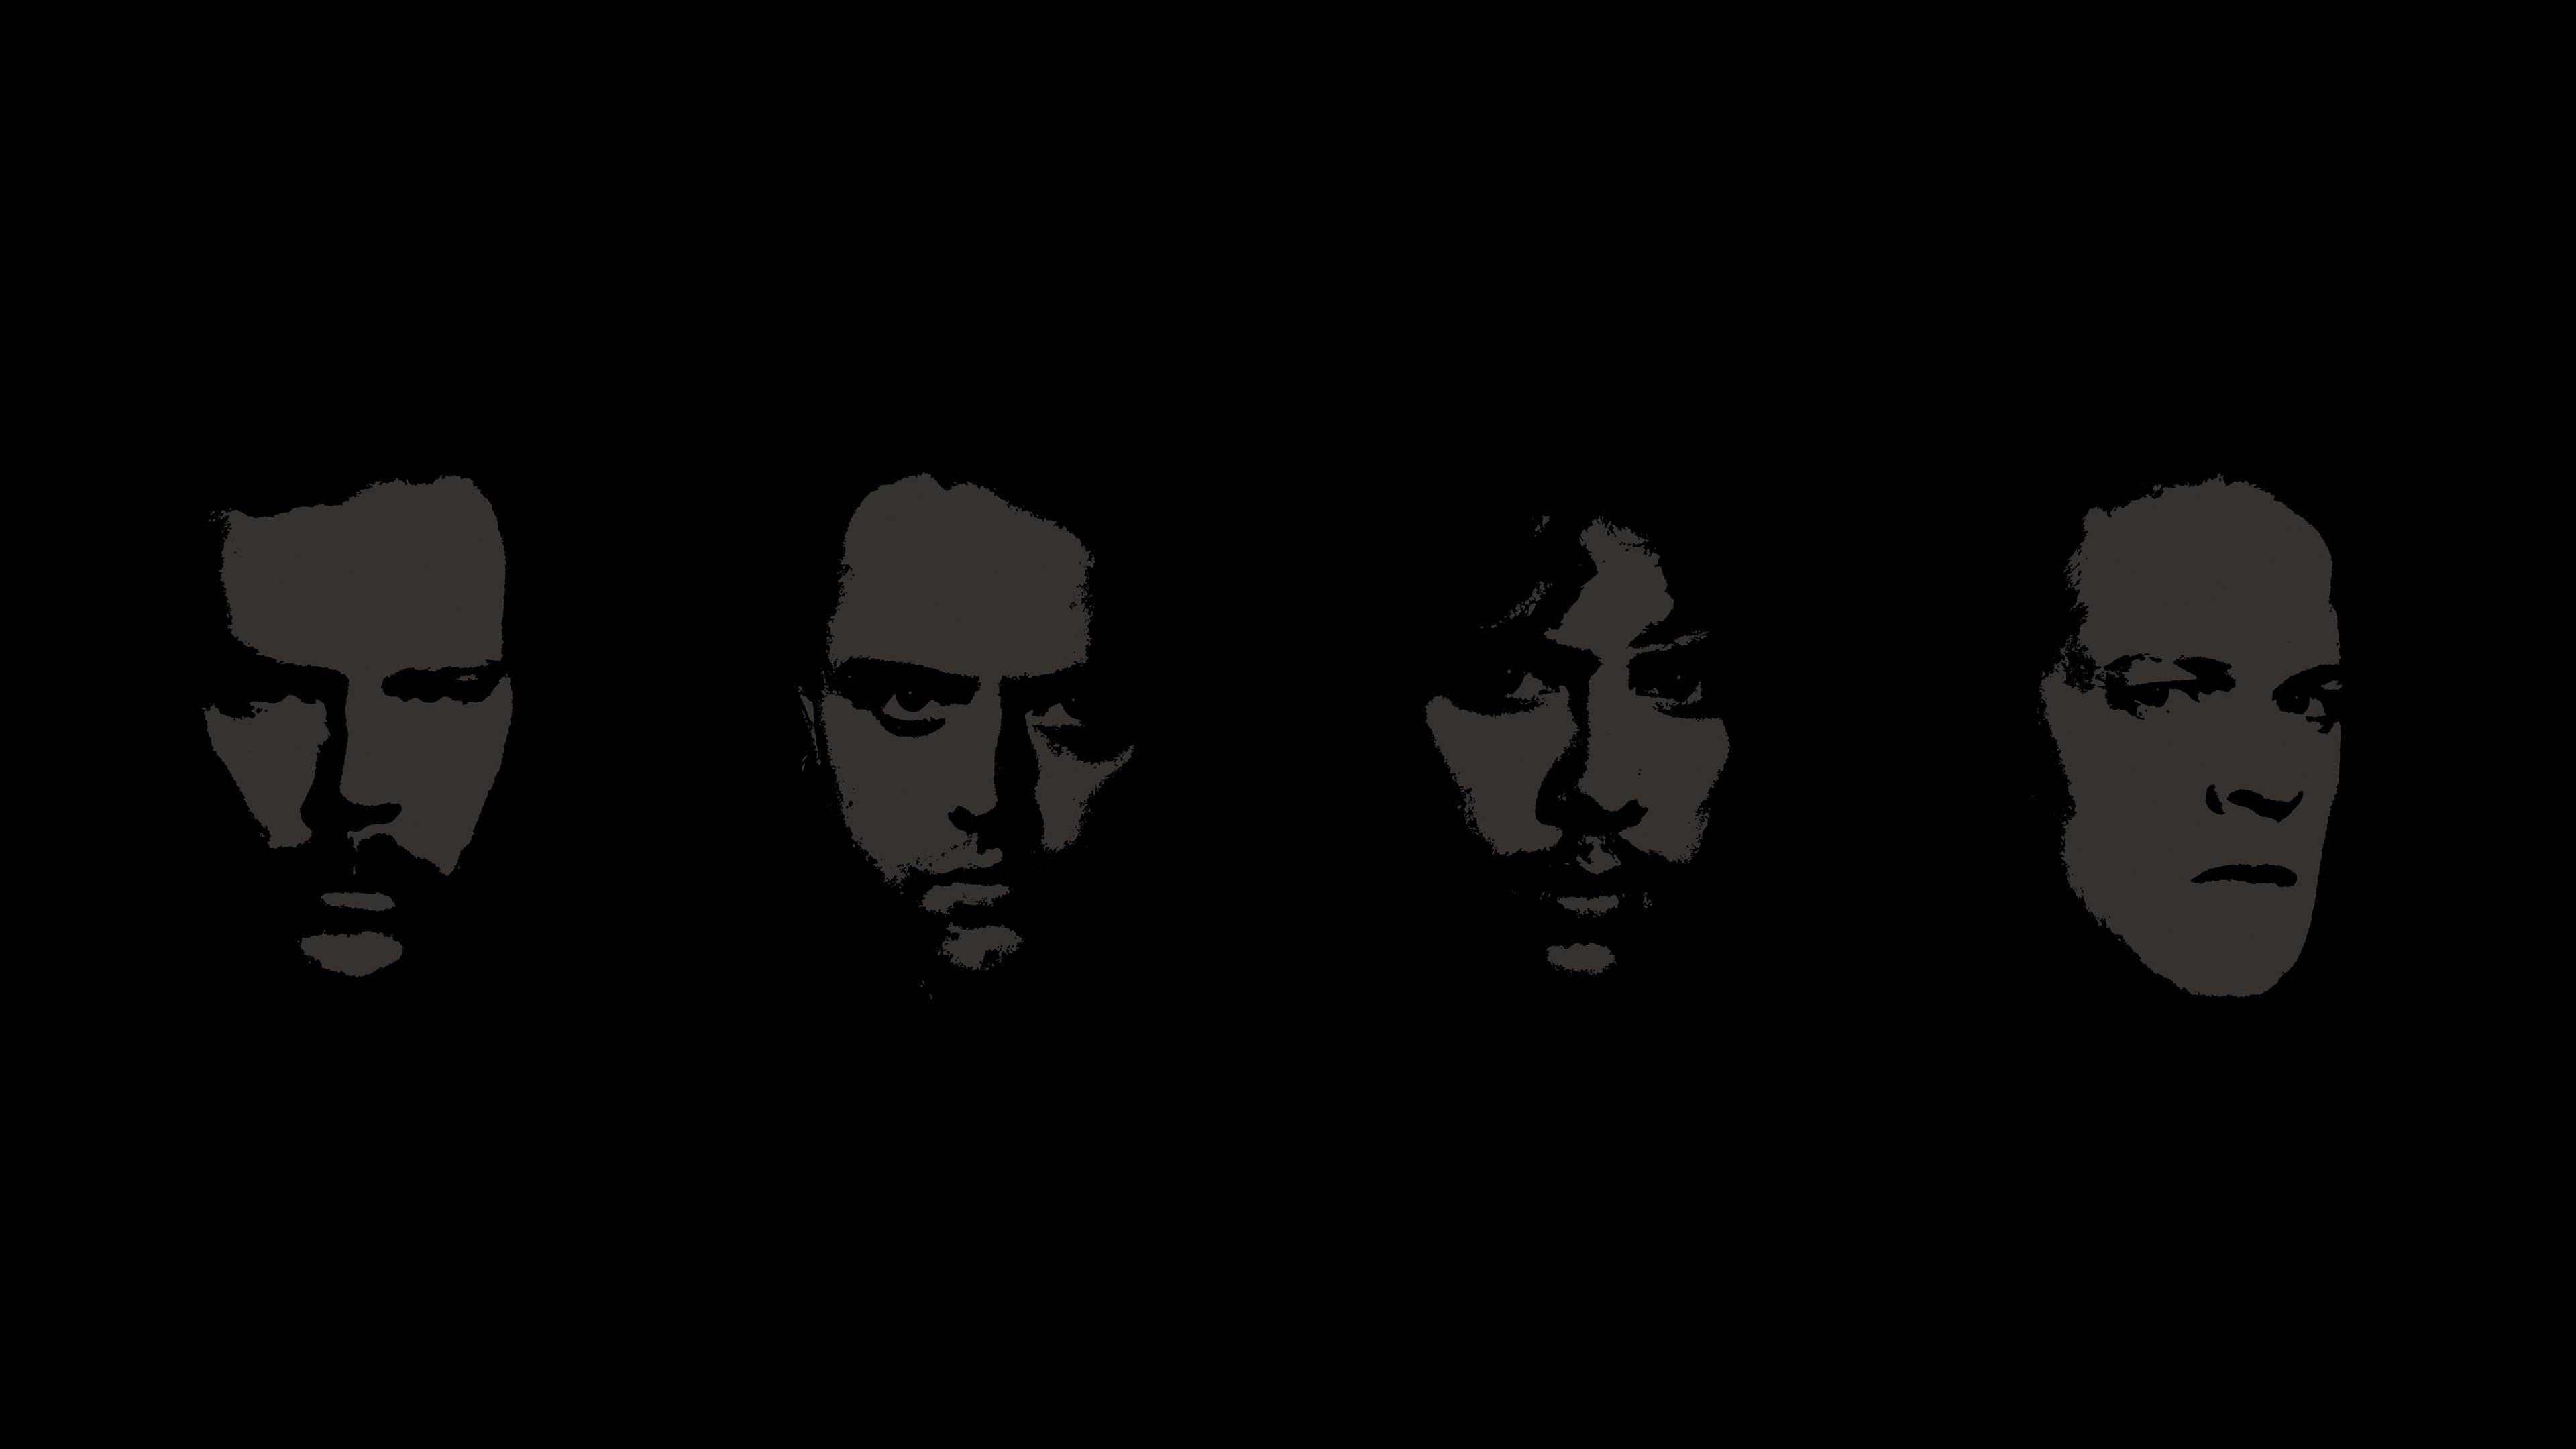 Banner Image for Metallica's Song "Enter Sandman"